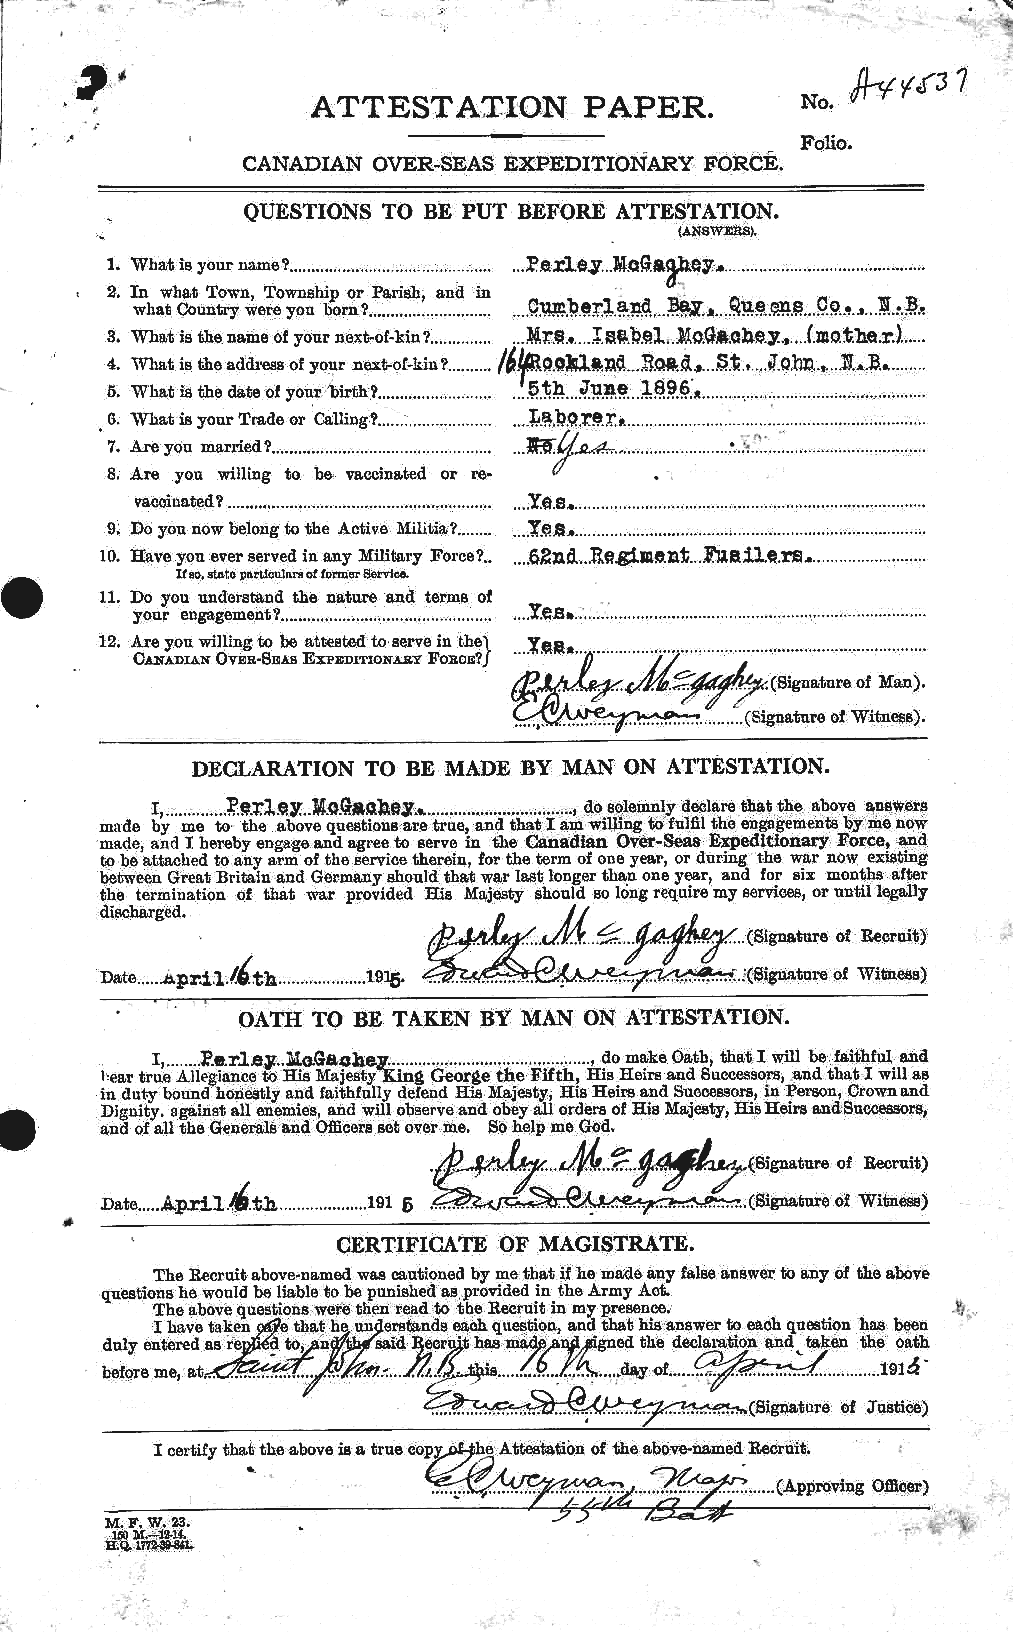 Dossiers du Personnel de la Première Guerre mondiale - CEC 522648a